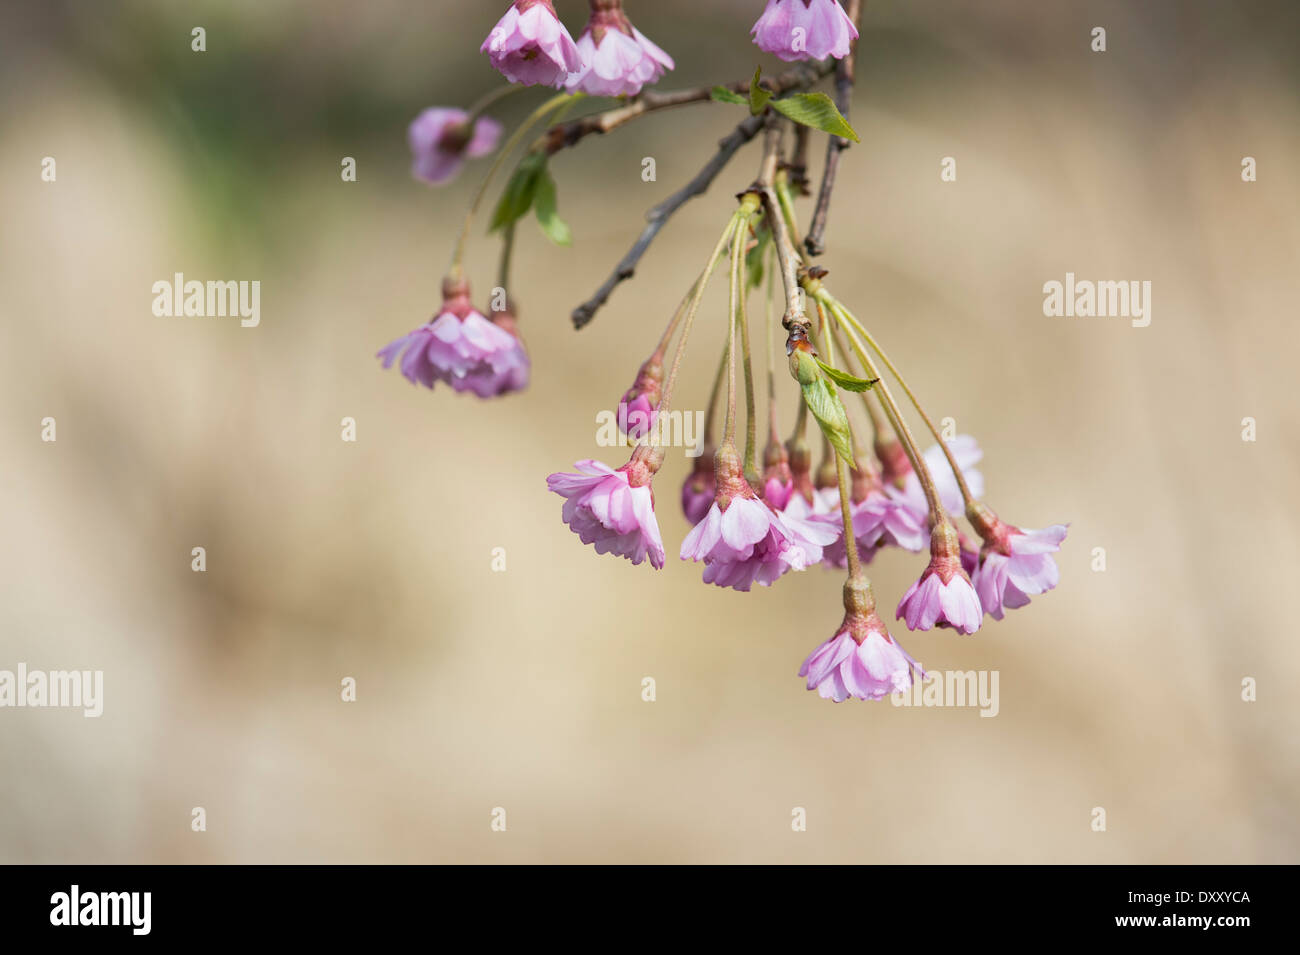 Prunus Subhirtella Pendula Plena Rosea. Weeping cherry blossom Stock Photo